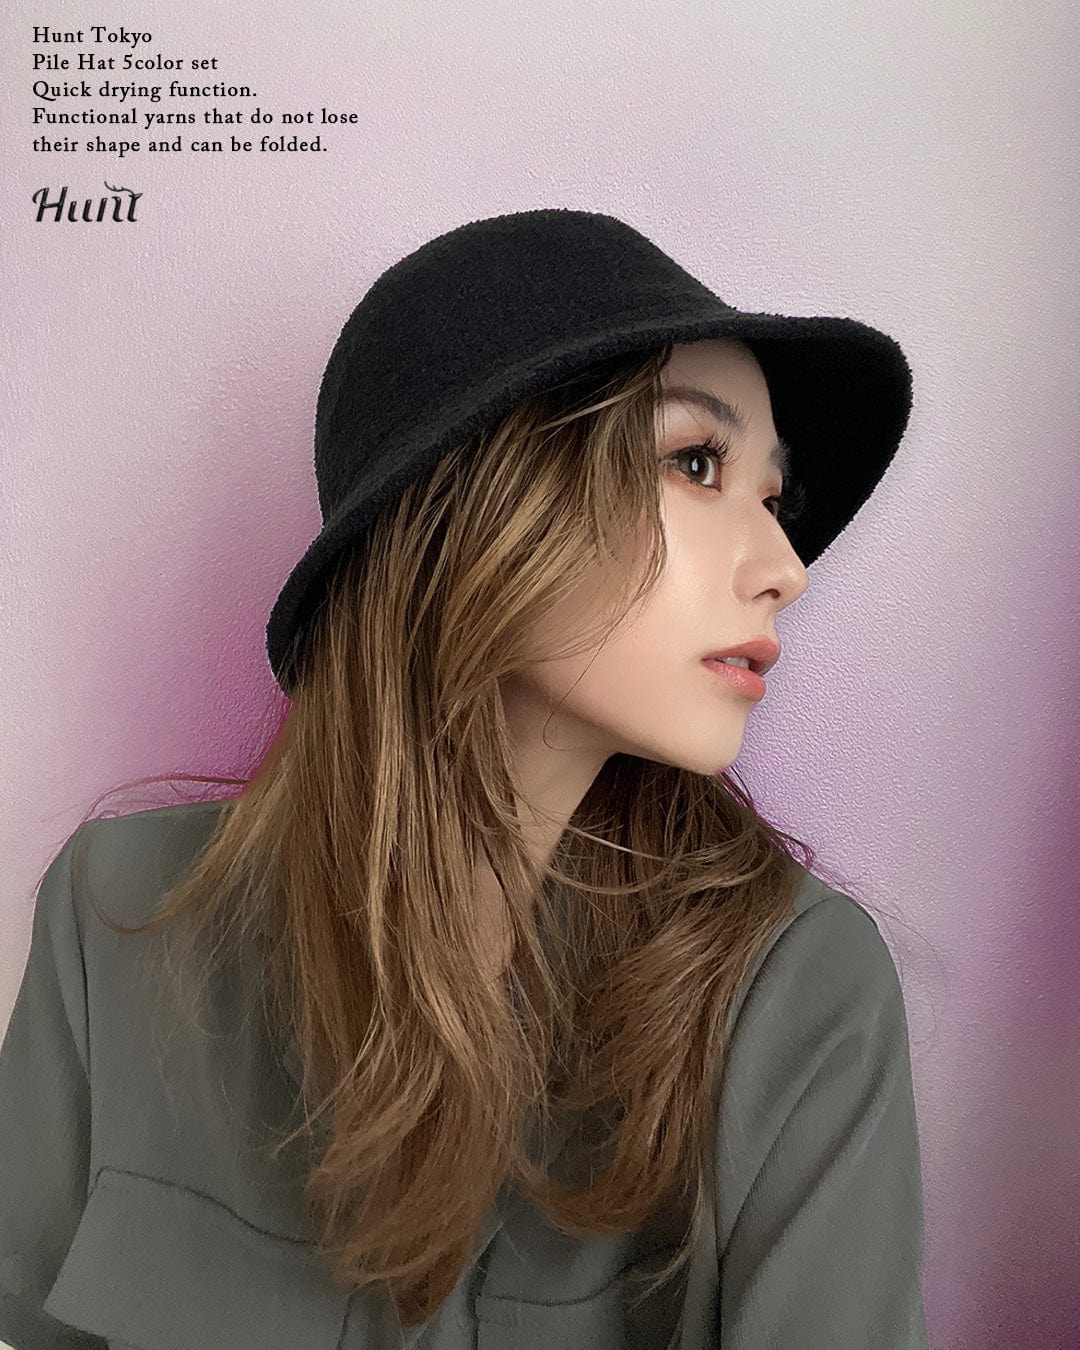 Pile Hat 5color set - Hunt Tokyo